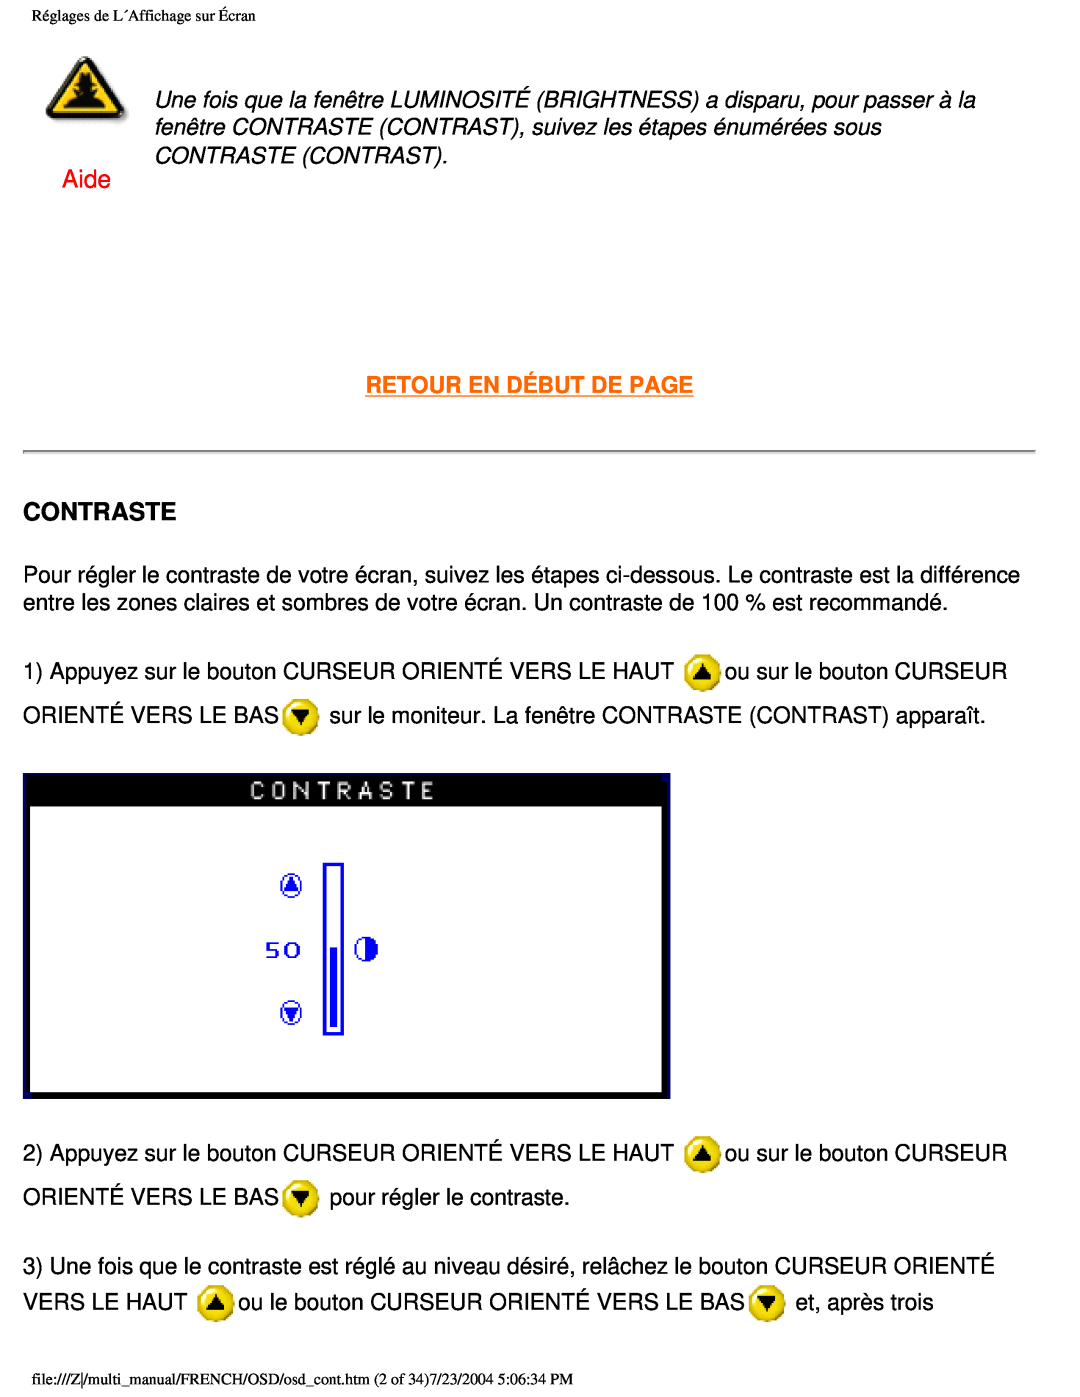 Philips 107B3 user manual Aide, Contraste, Retour En Début De Page 